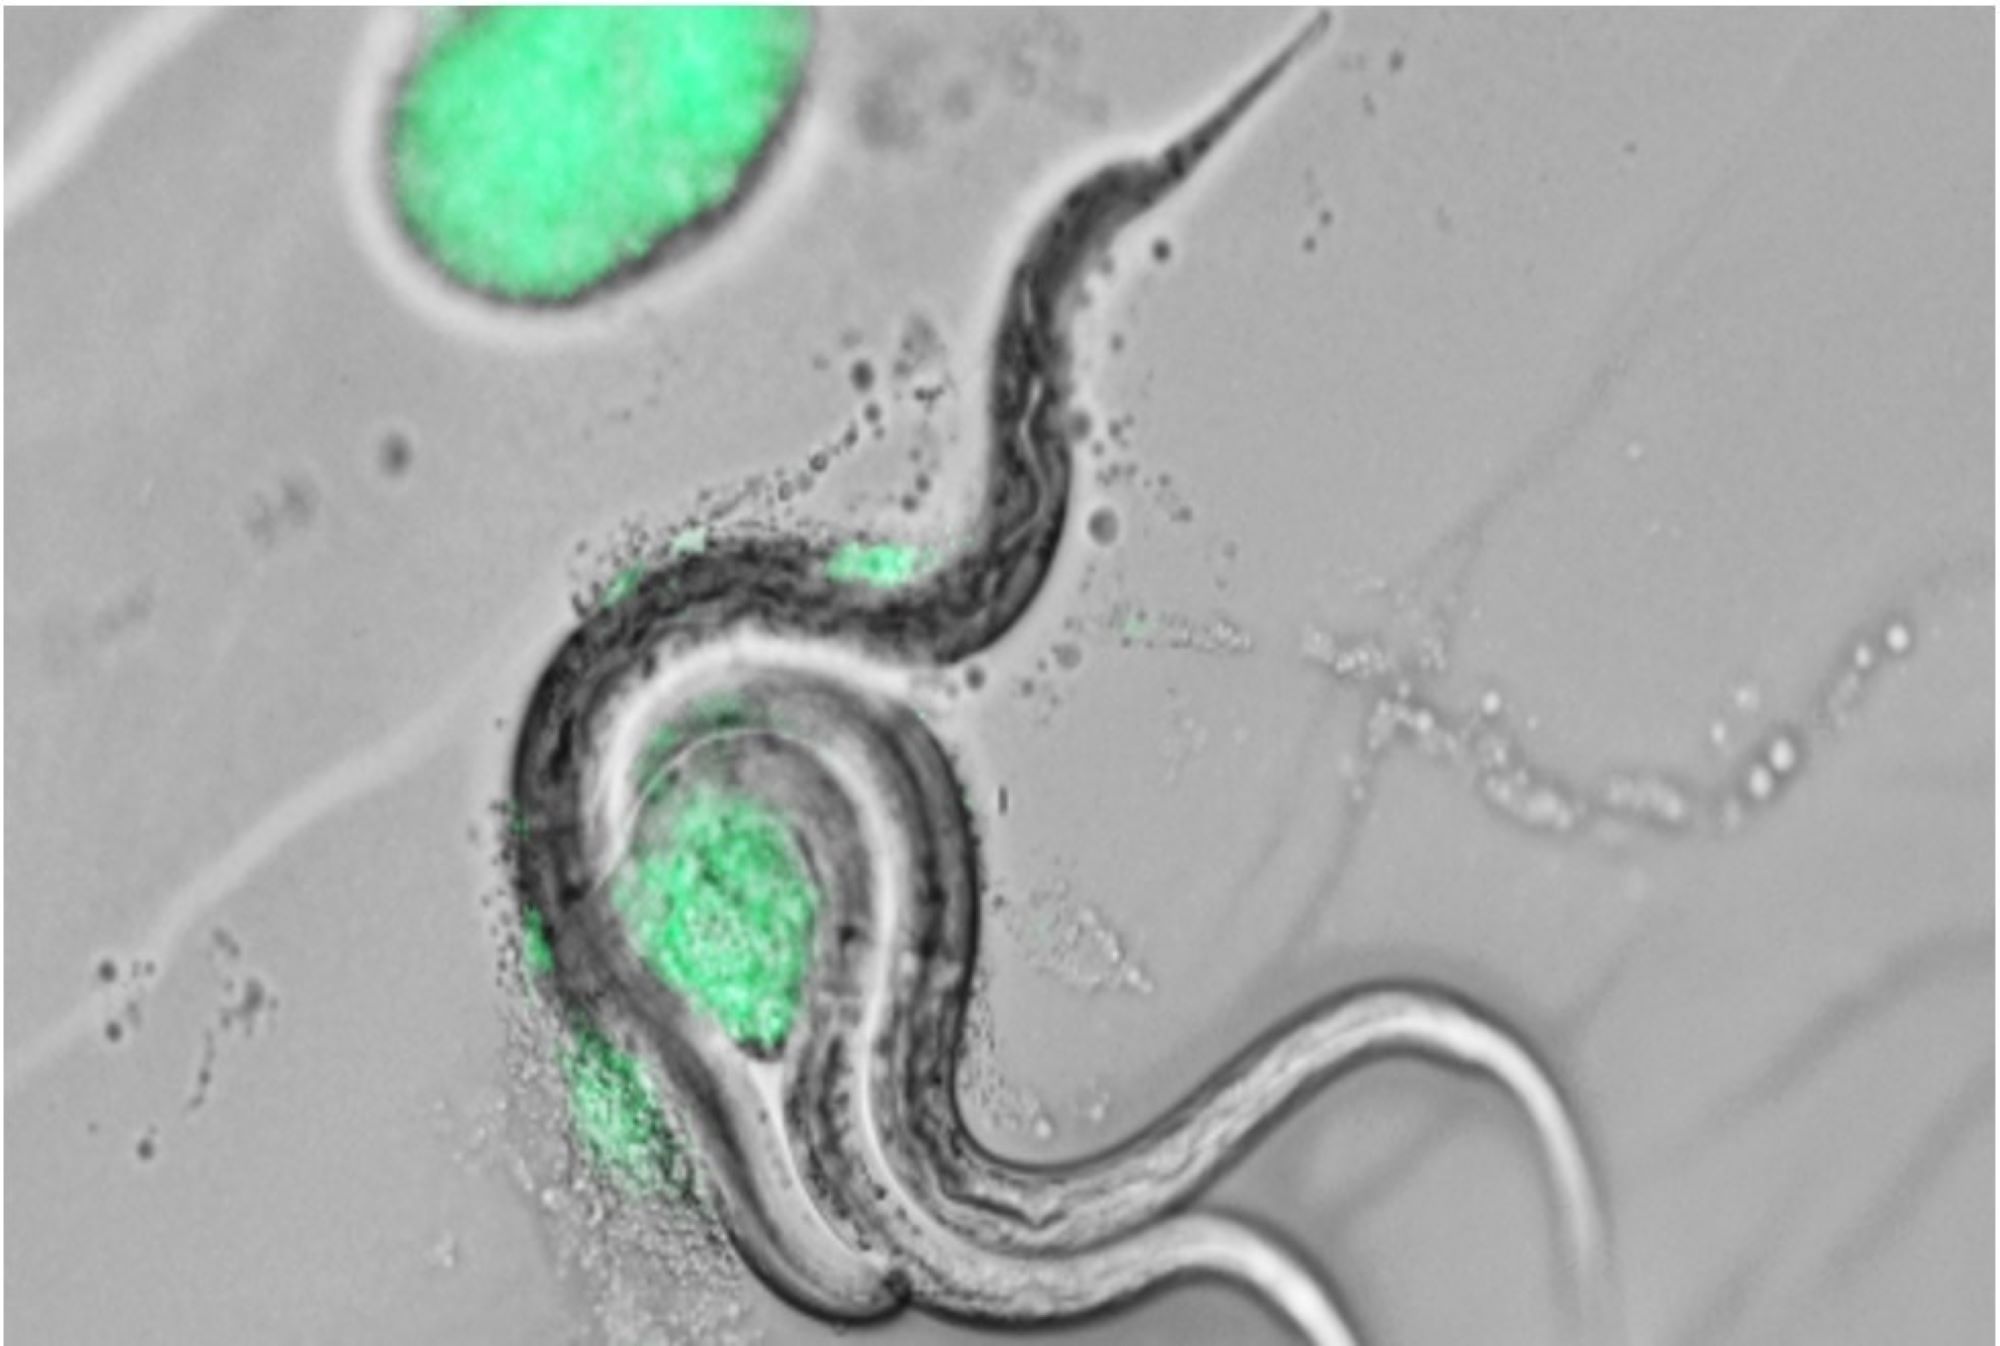 Fluorescent microscopy images of nematodes